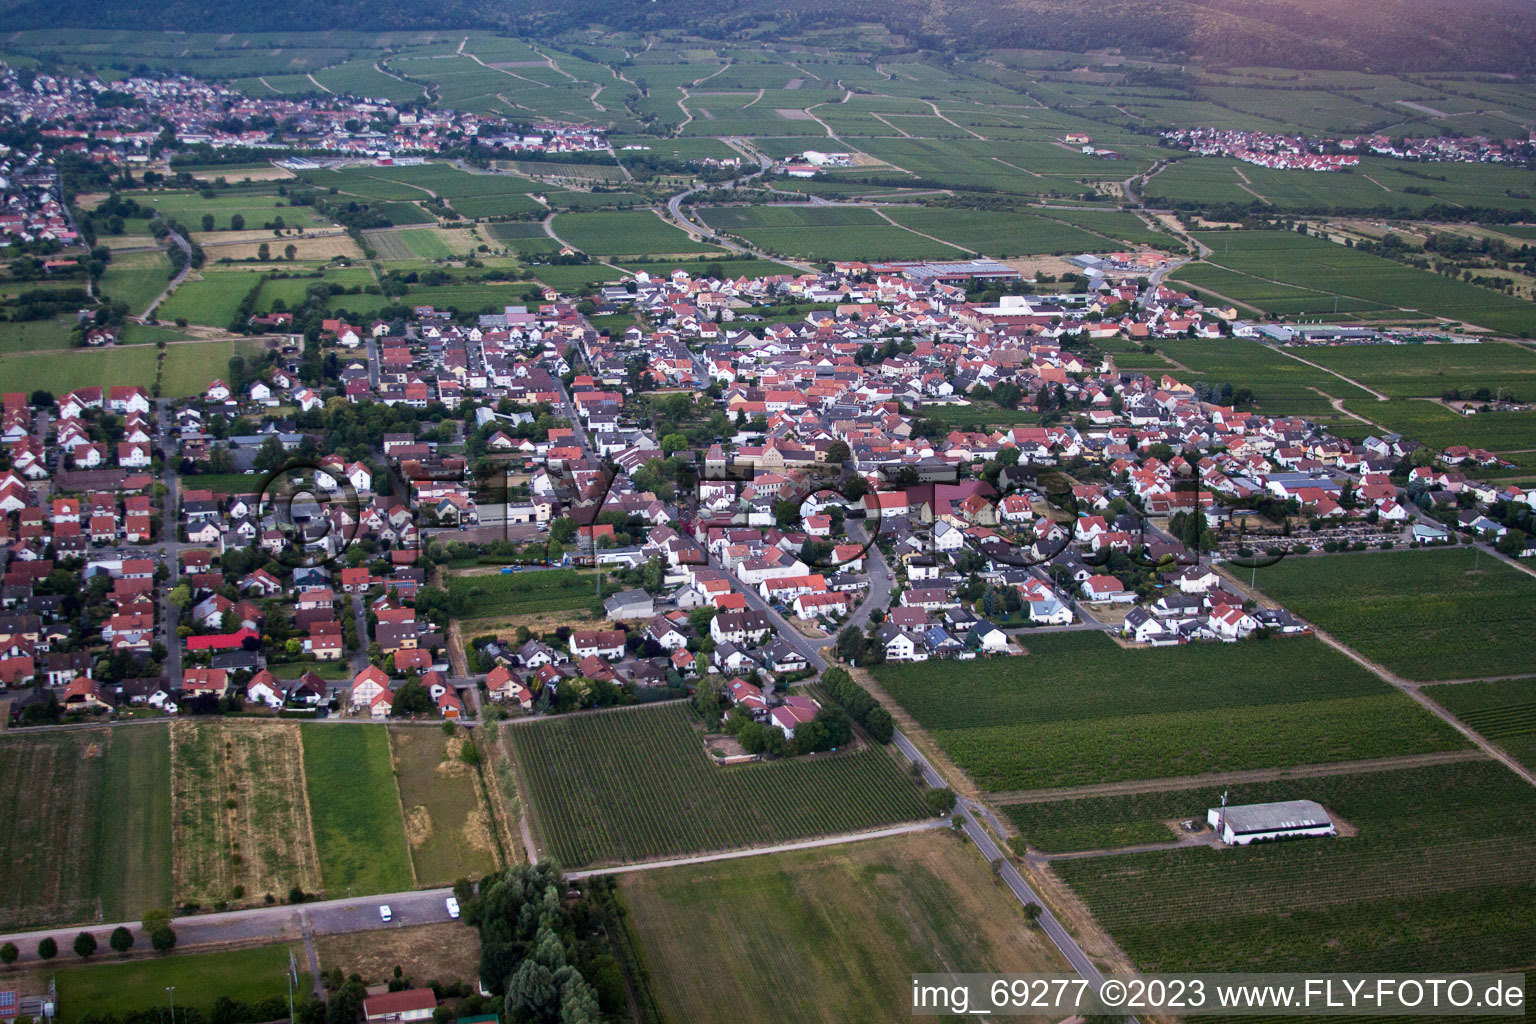 Aerial view of Niederkirchen in Niederkirchen bei Deidesheim in the state Rhineland-Palatinate, Germany